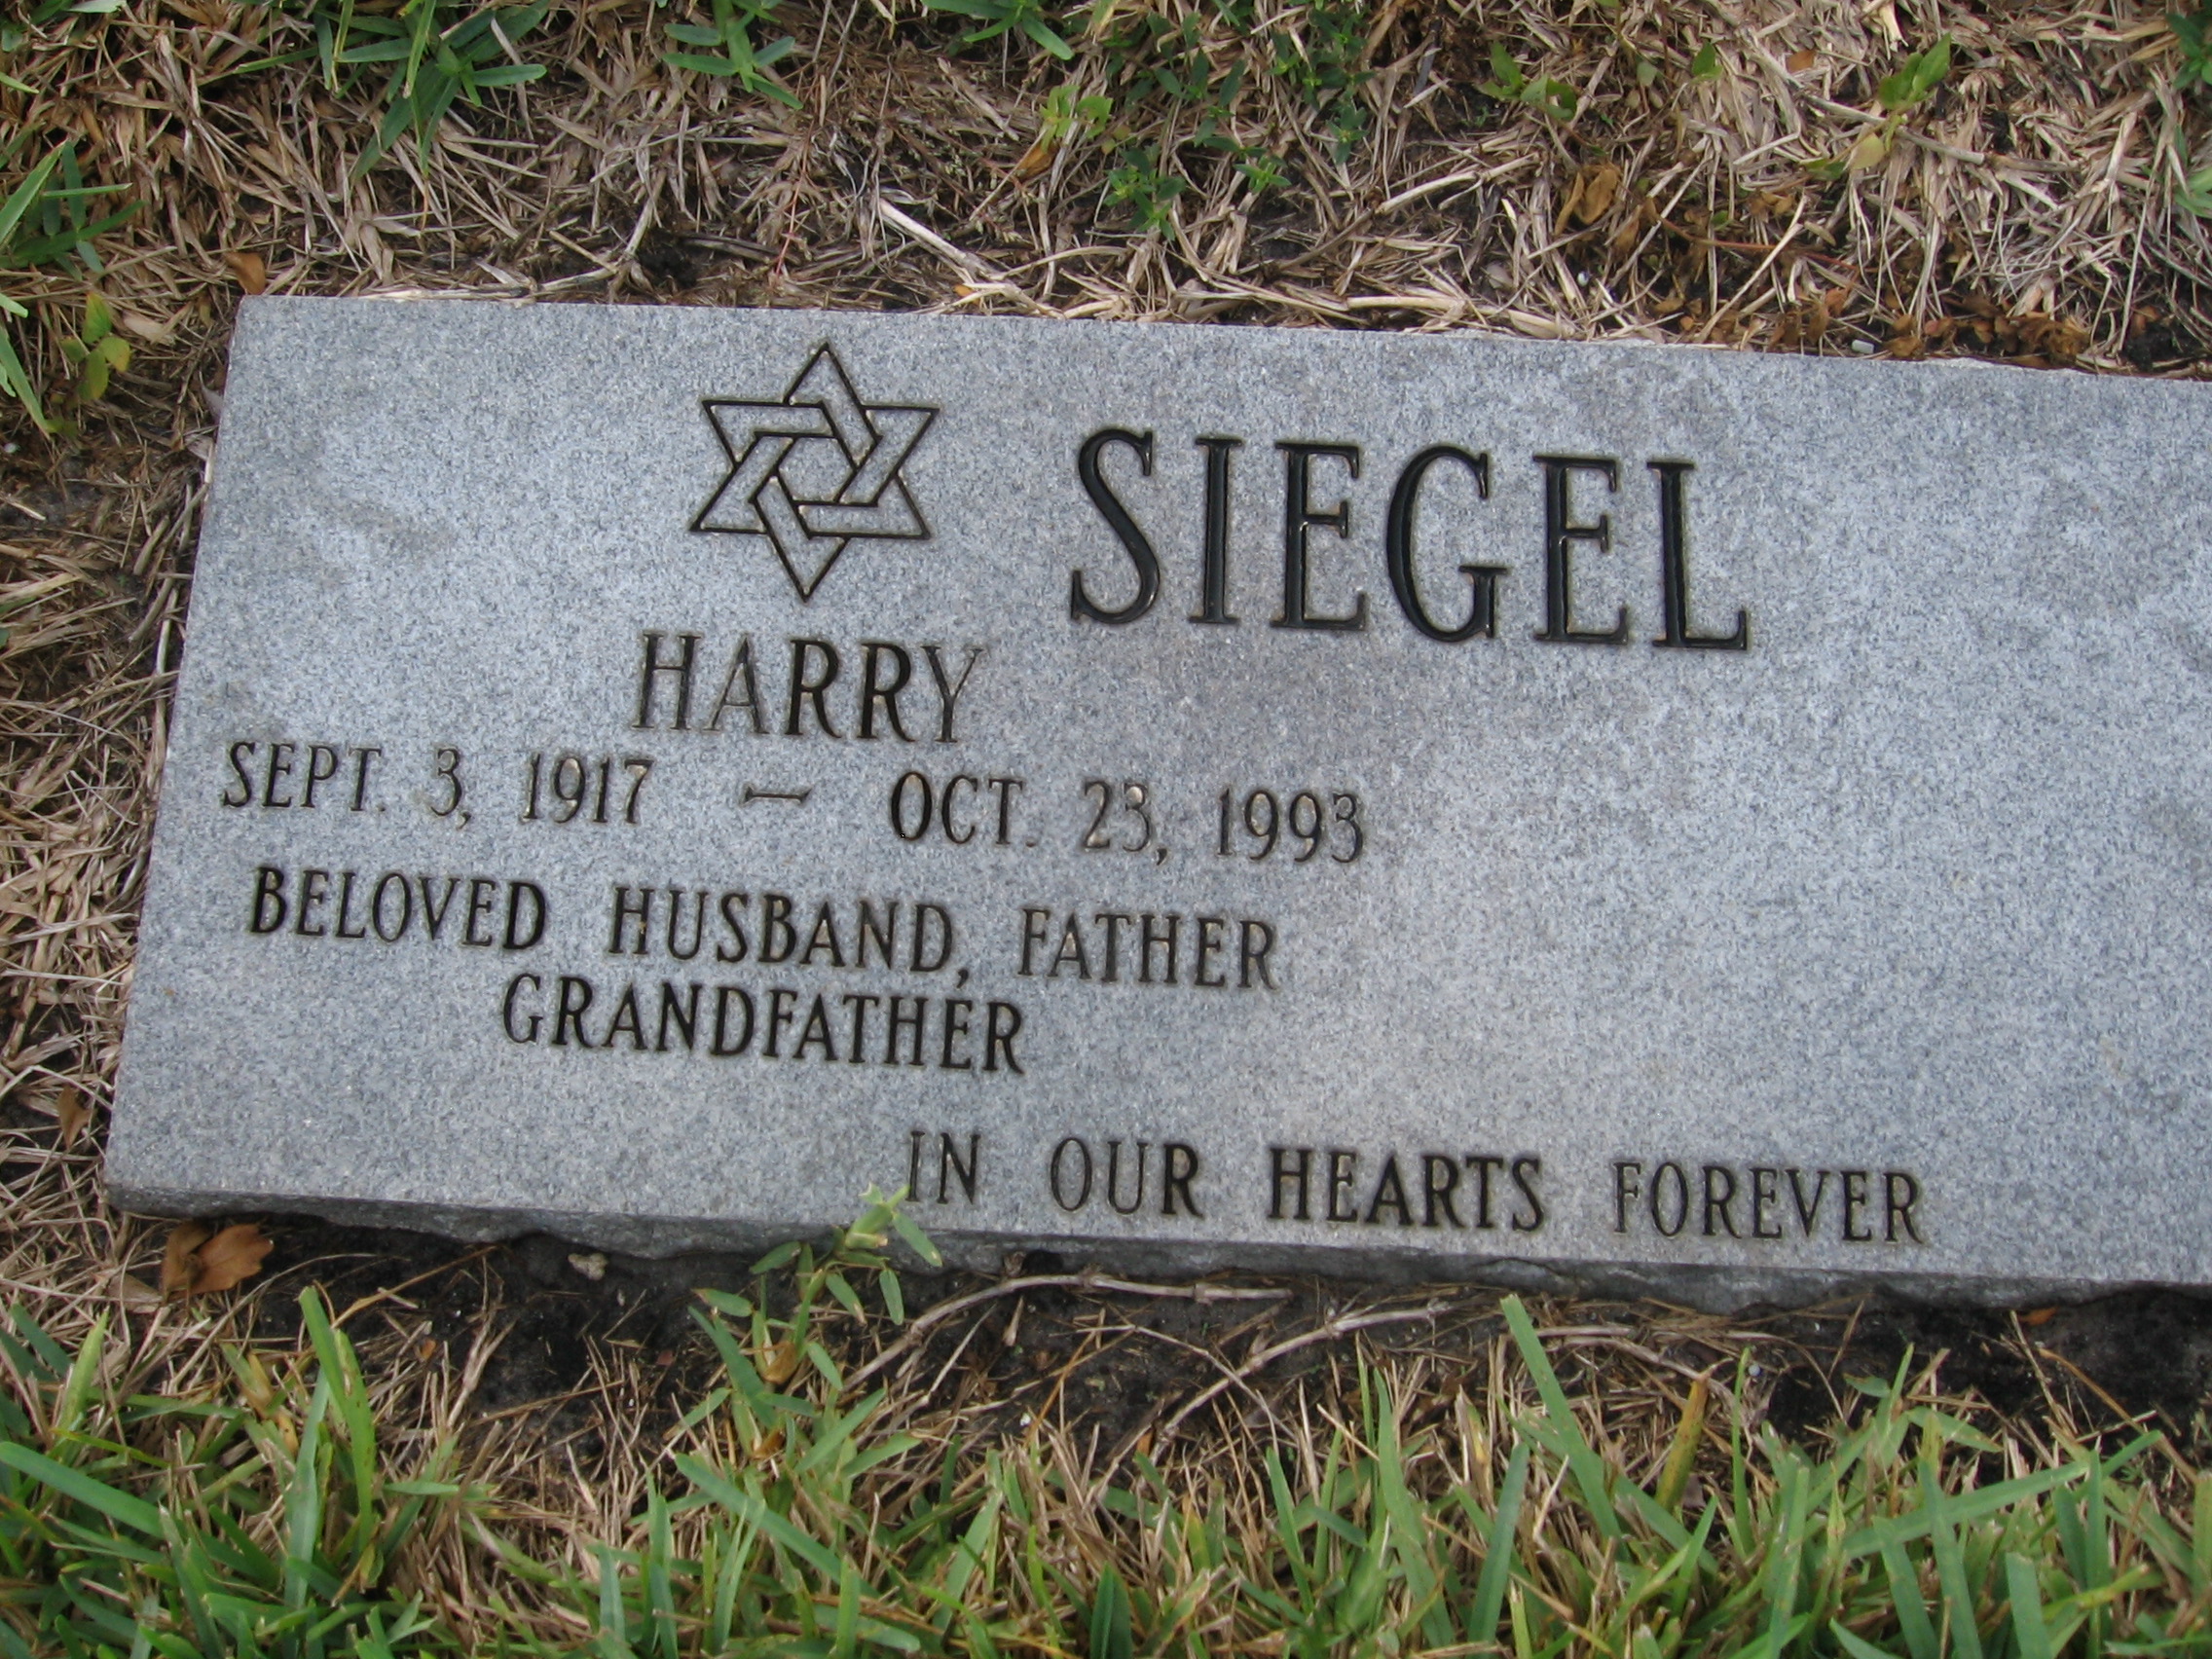 Harry Siegel